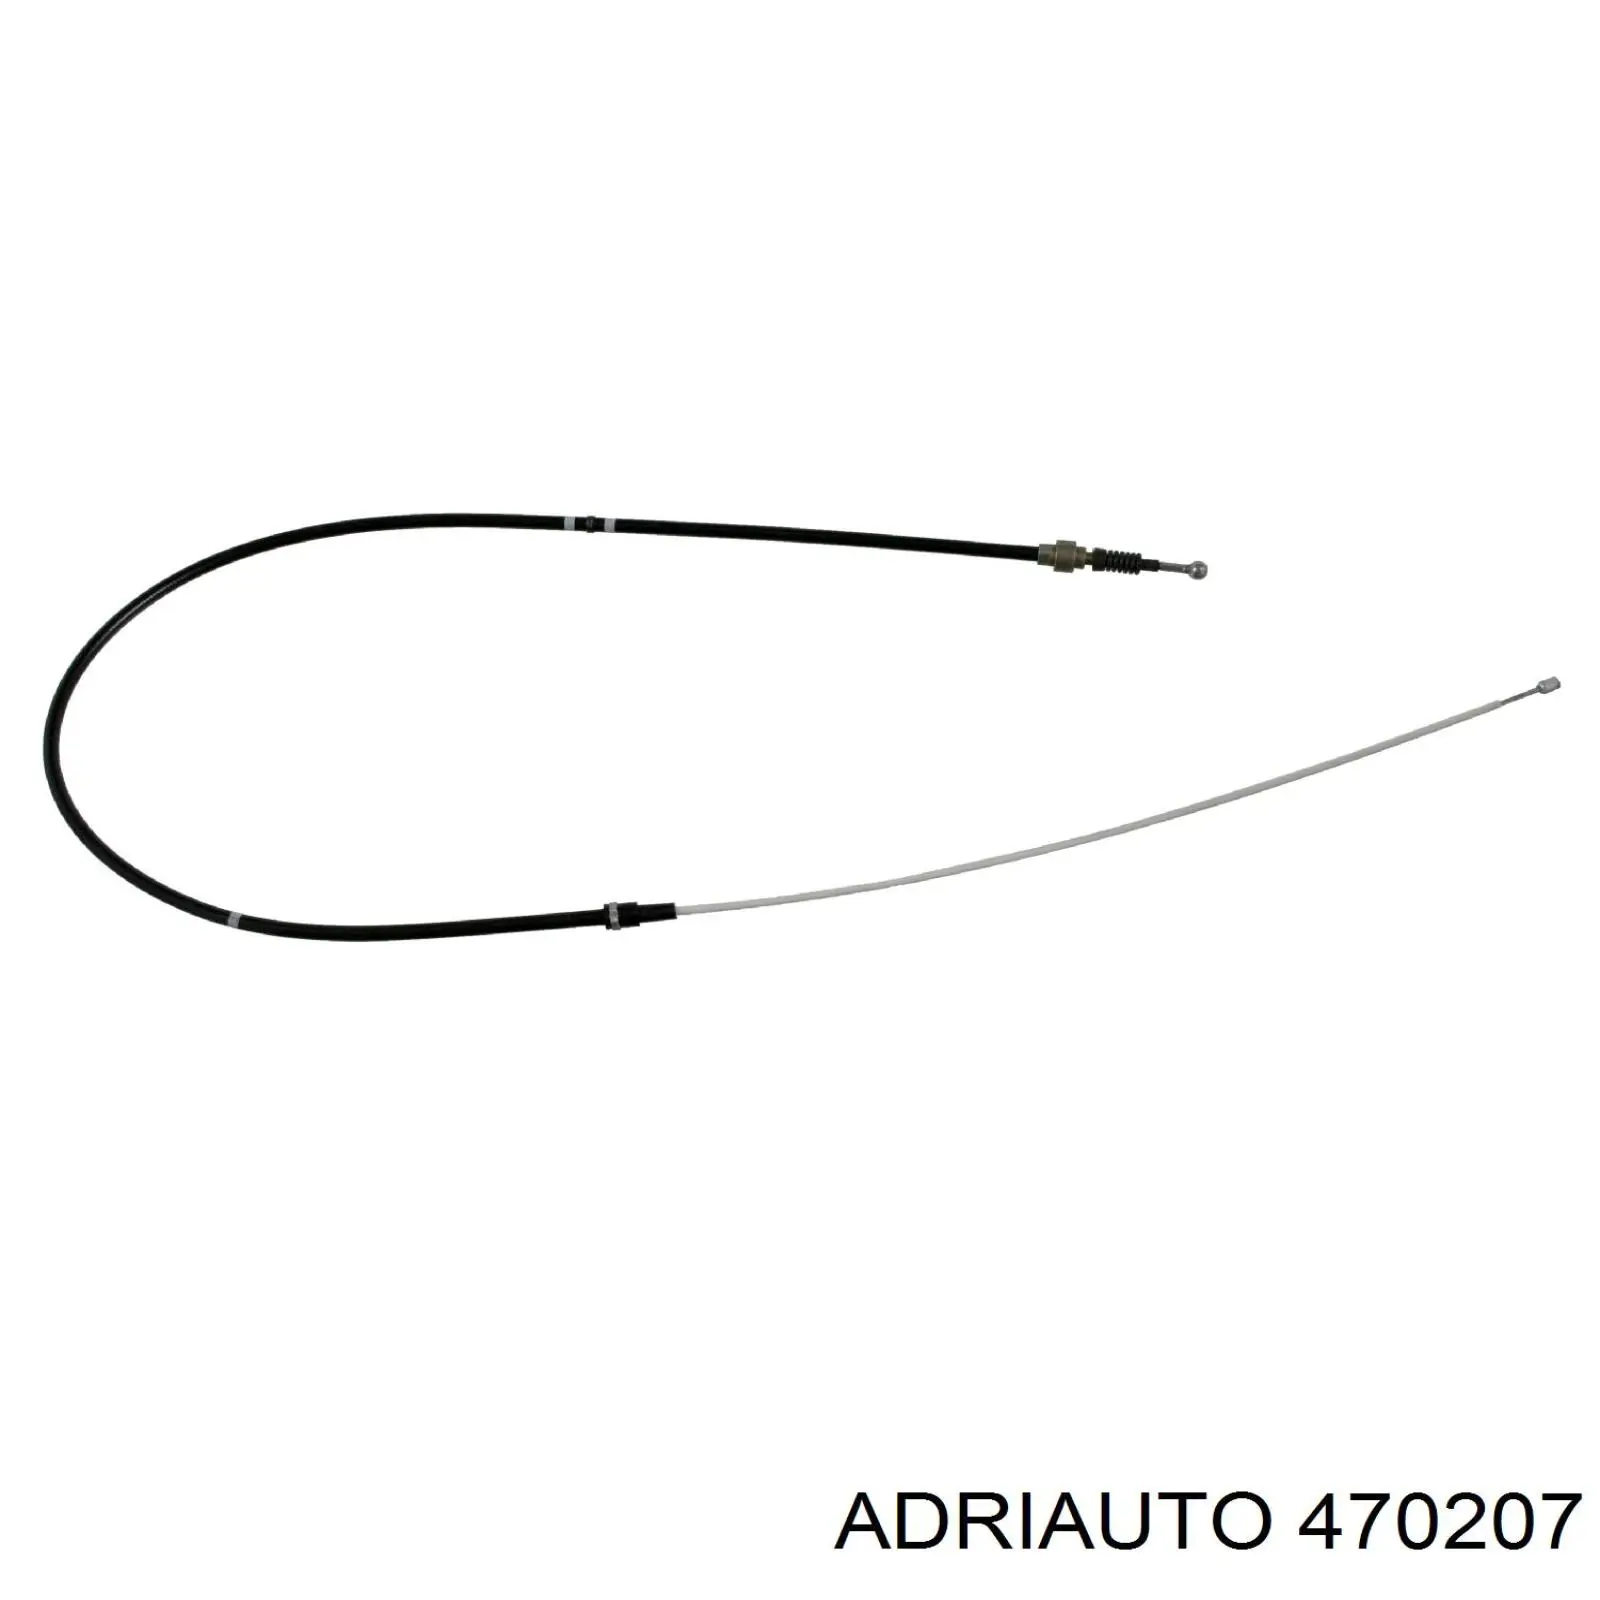 470207 Adriauto cable de freno de mano trasero derecho/izquierdo